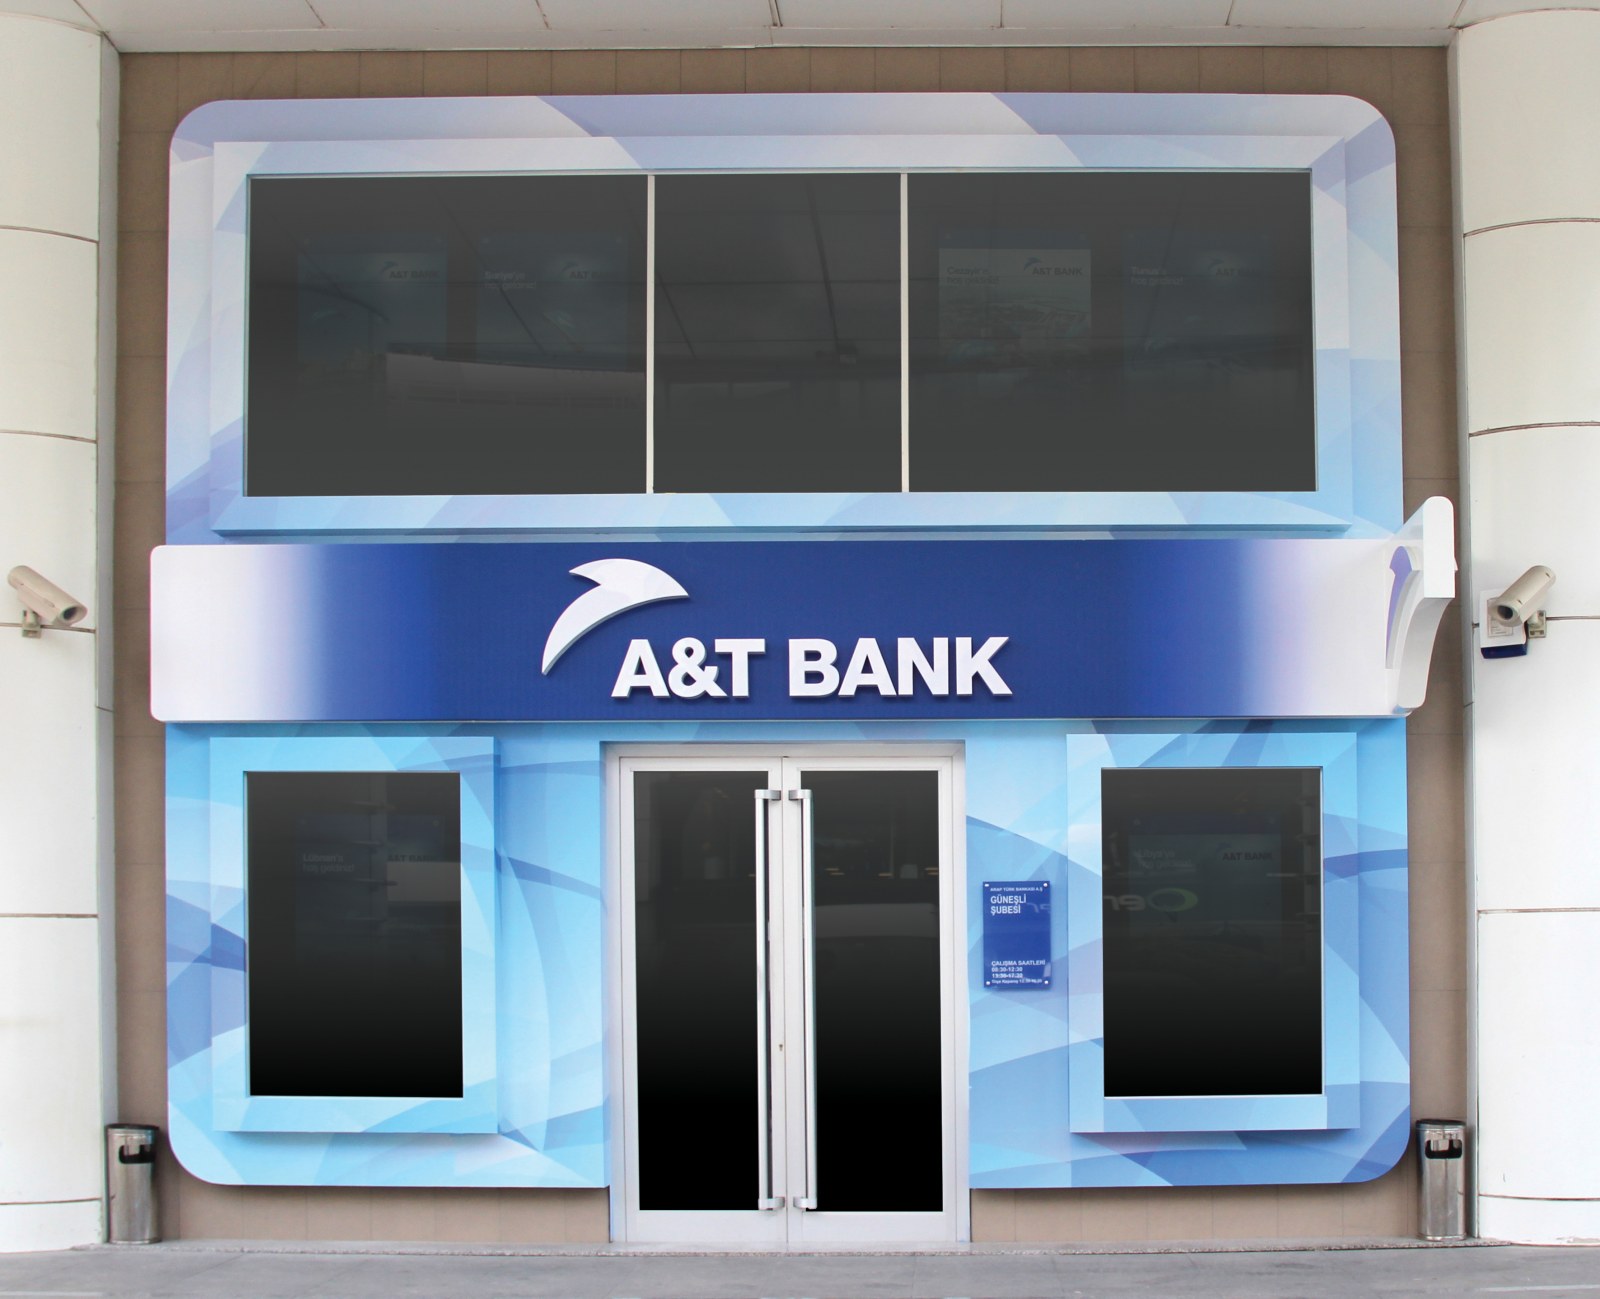 A&T BANK / Şube Ön Cephe Tasarımı / Branch Façade Design